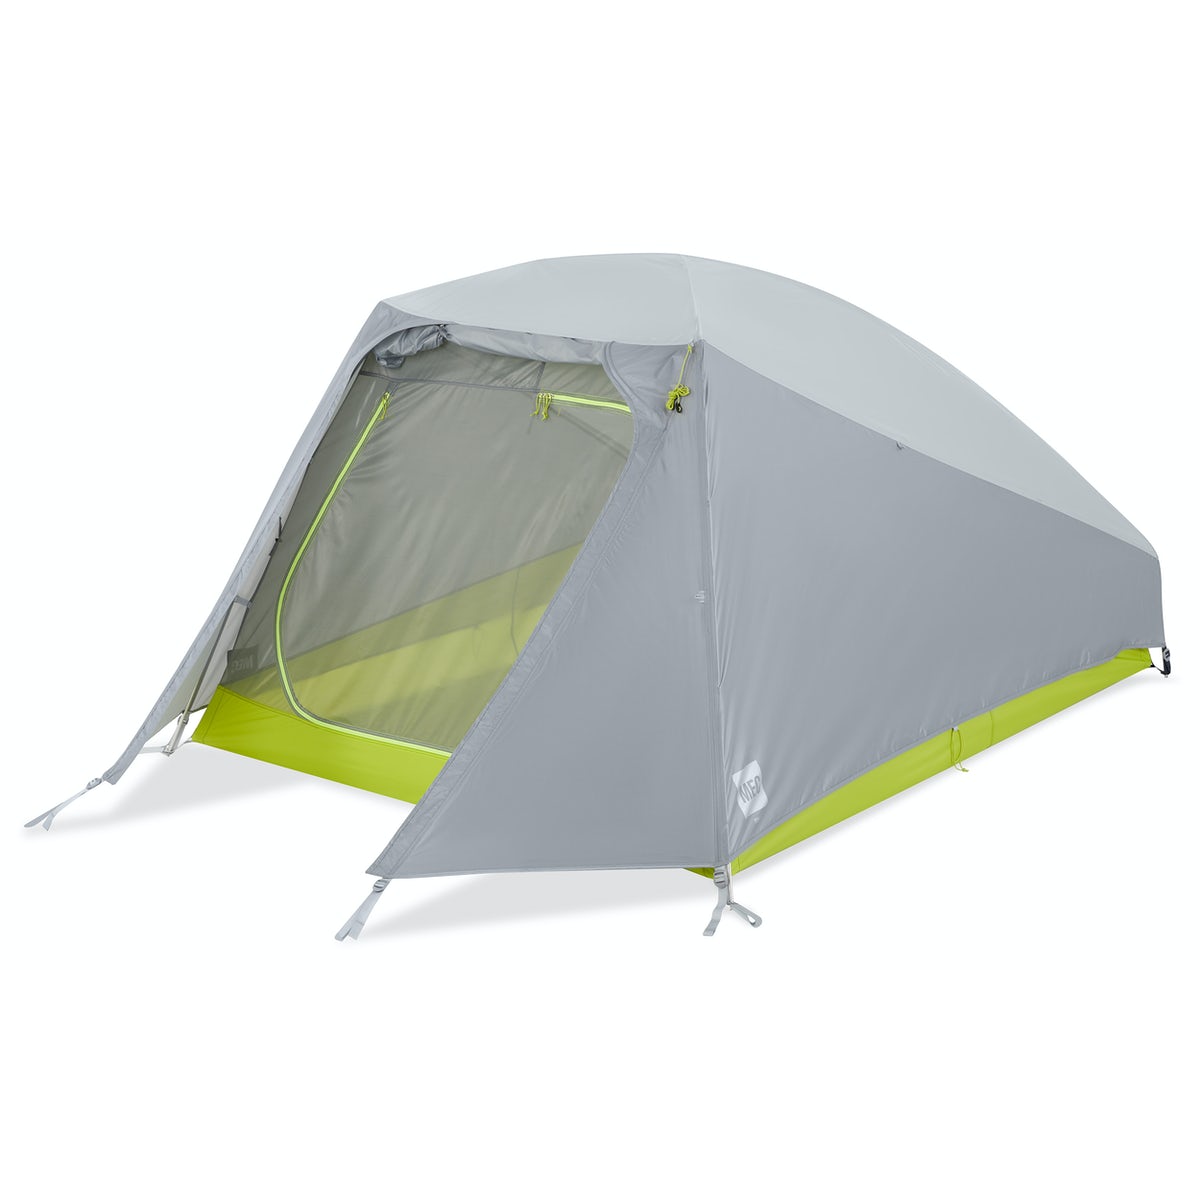 Neo 3 tent